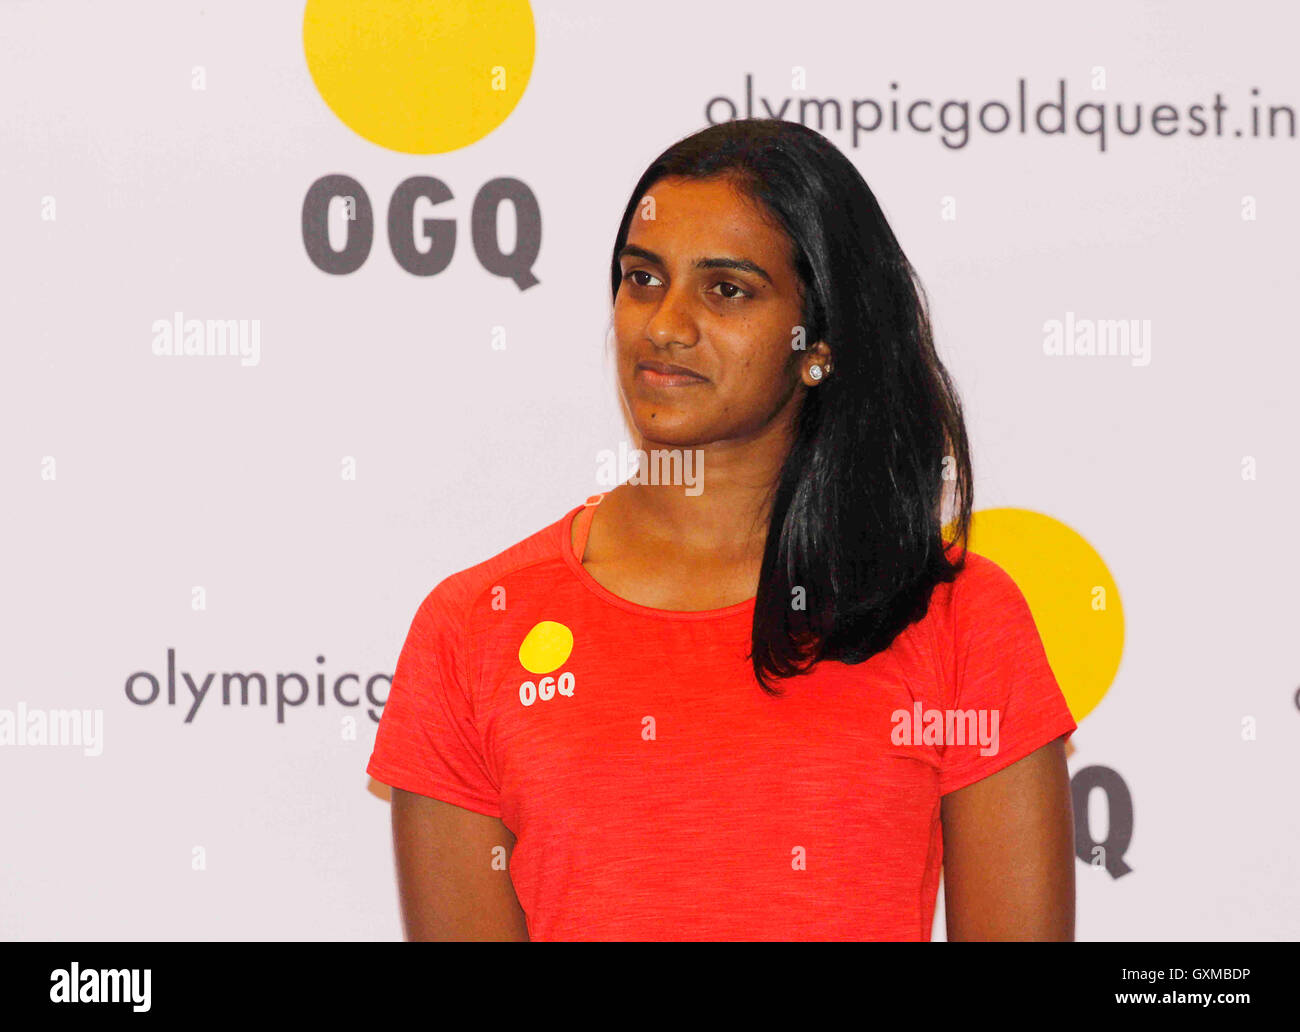 Joueur de badminton aux Jeux Olympiques de Rio, les Indiens P V Sindhu félicitation cérémonie organisée, une organisation à but non lucratif OGQ Mumbai Banque D'Images